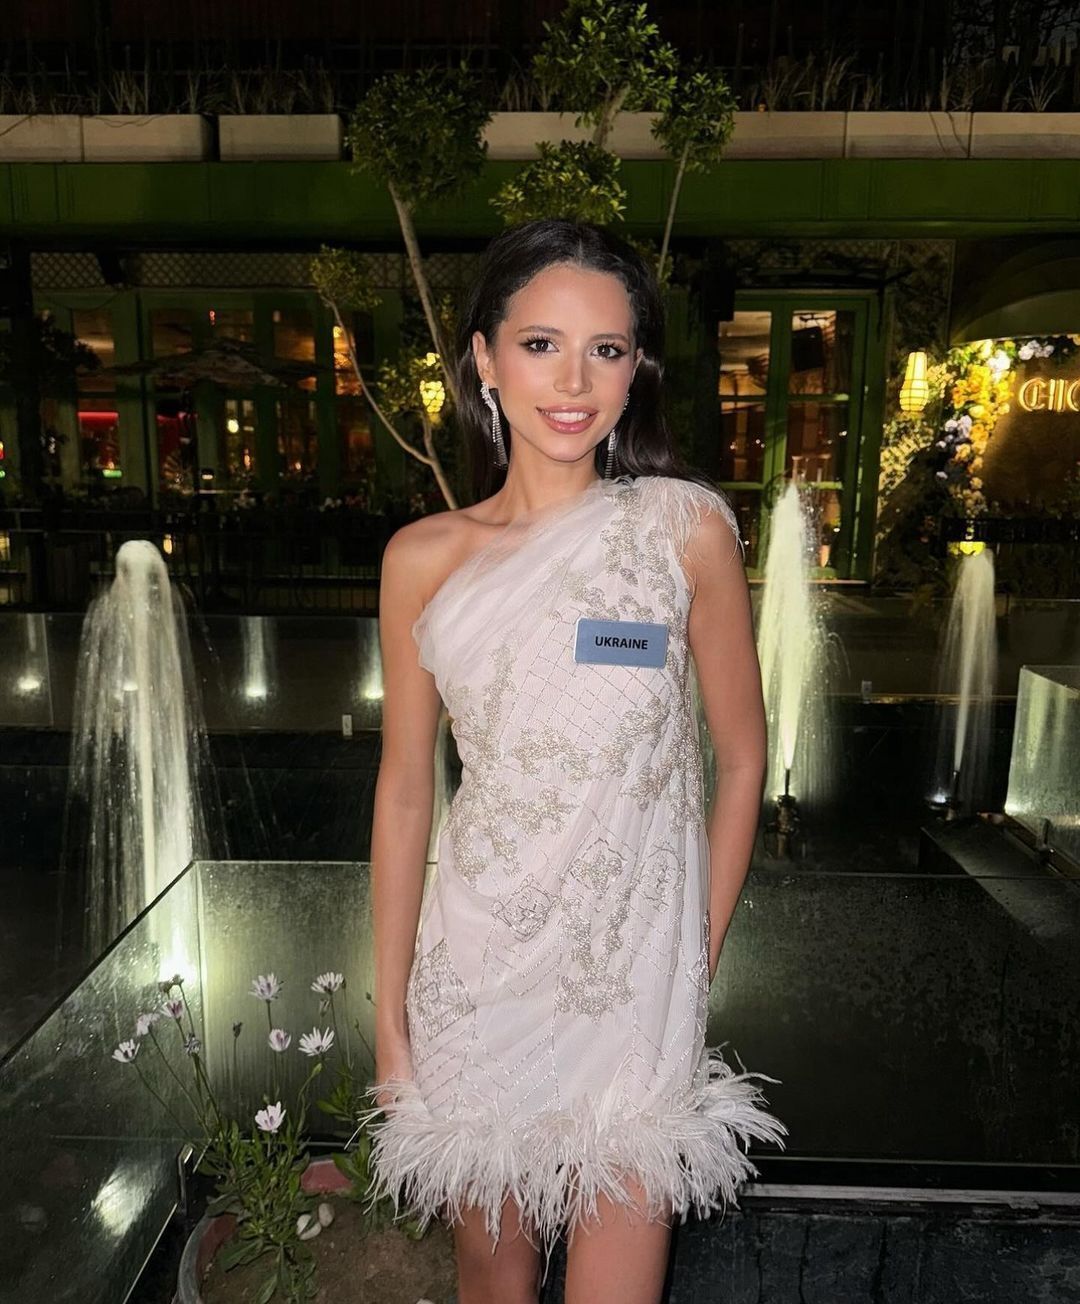 Участница "Мисс Мира 2023" от Украины София Шамия показала своих первых конкуренток на конкурсе в Индии. Фото